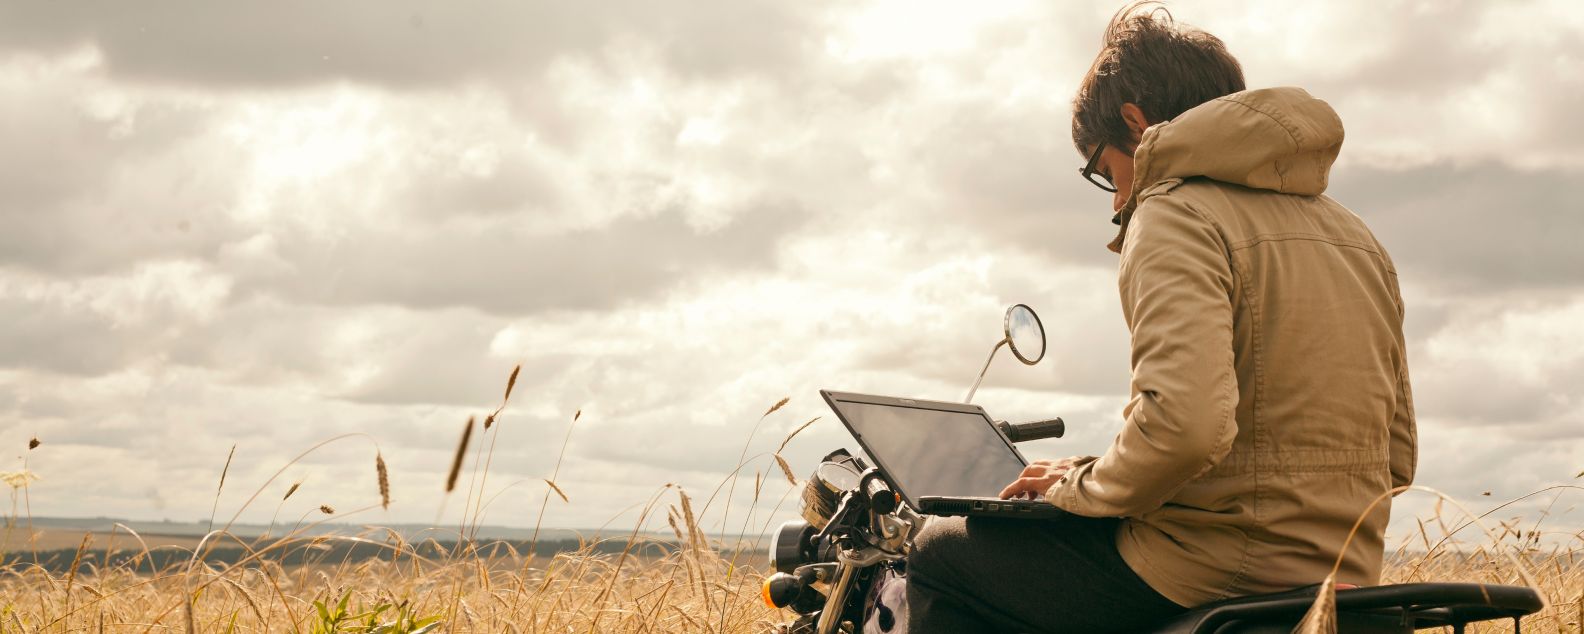 一个人坐在摩托车上使用笔记本电脑工作